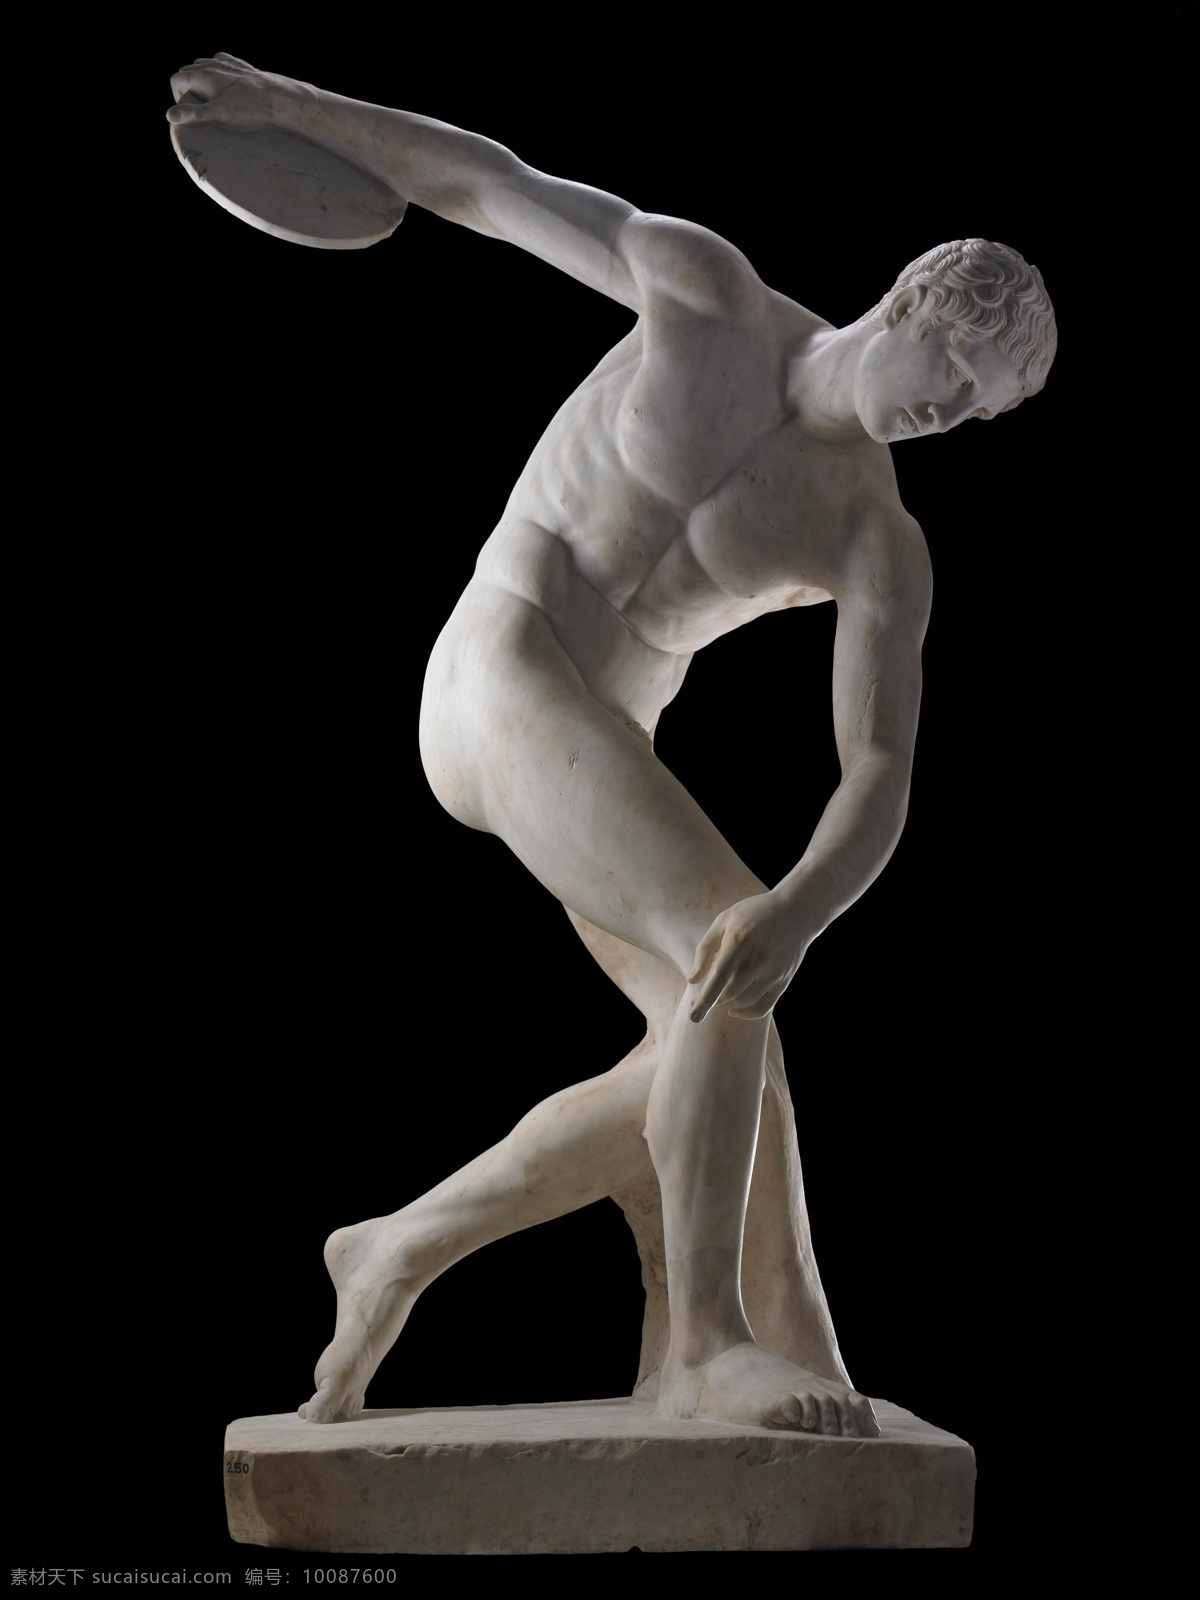 大理石 雕塑 美术绘画 摄影图库 文化艺术 古希腊 米隆 掷铁饼 掷铁饼者 矢量图 日常生活